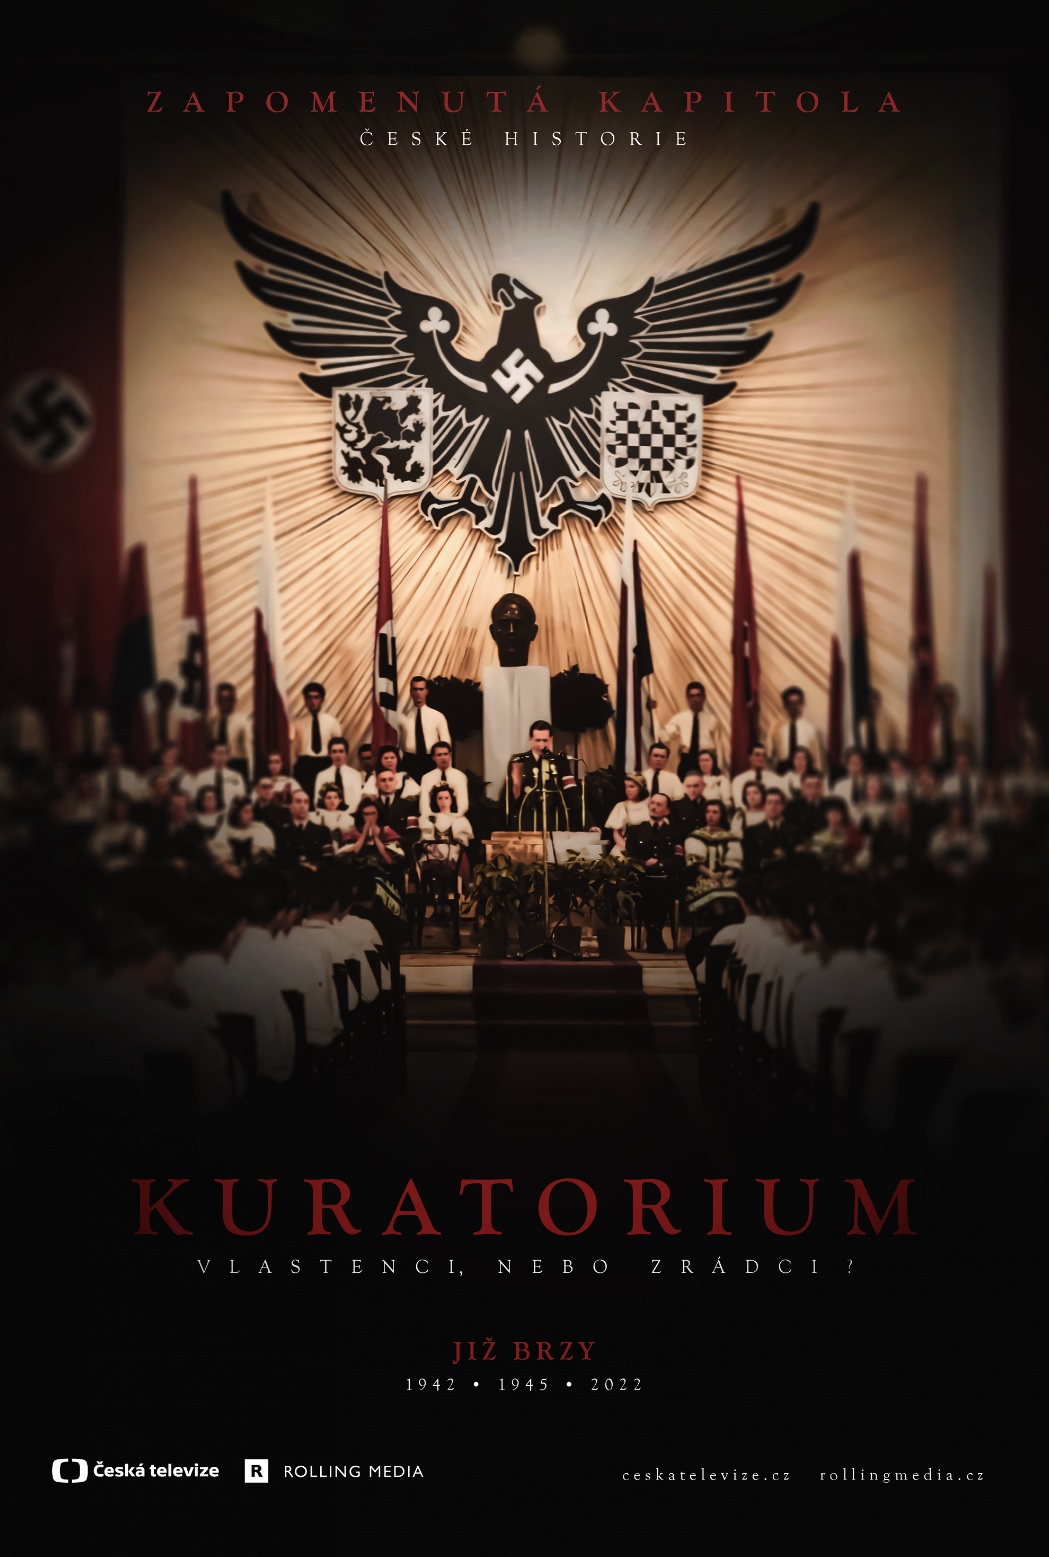 Plakát pro film “Kuratorium”